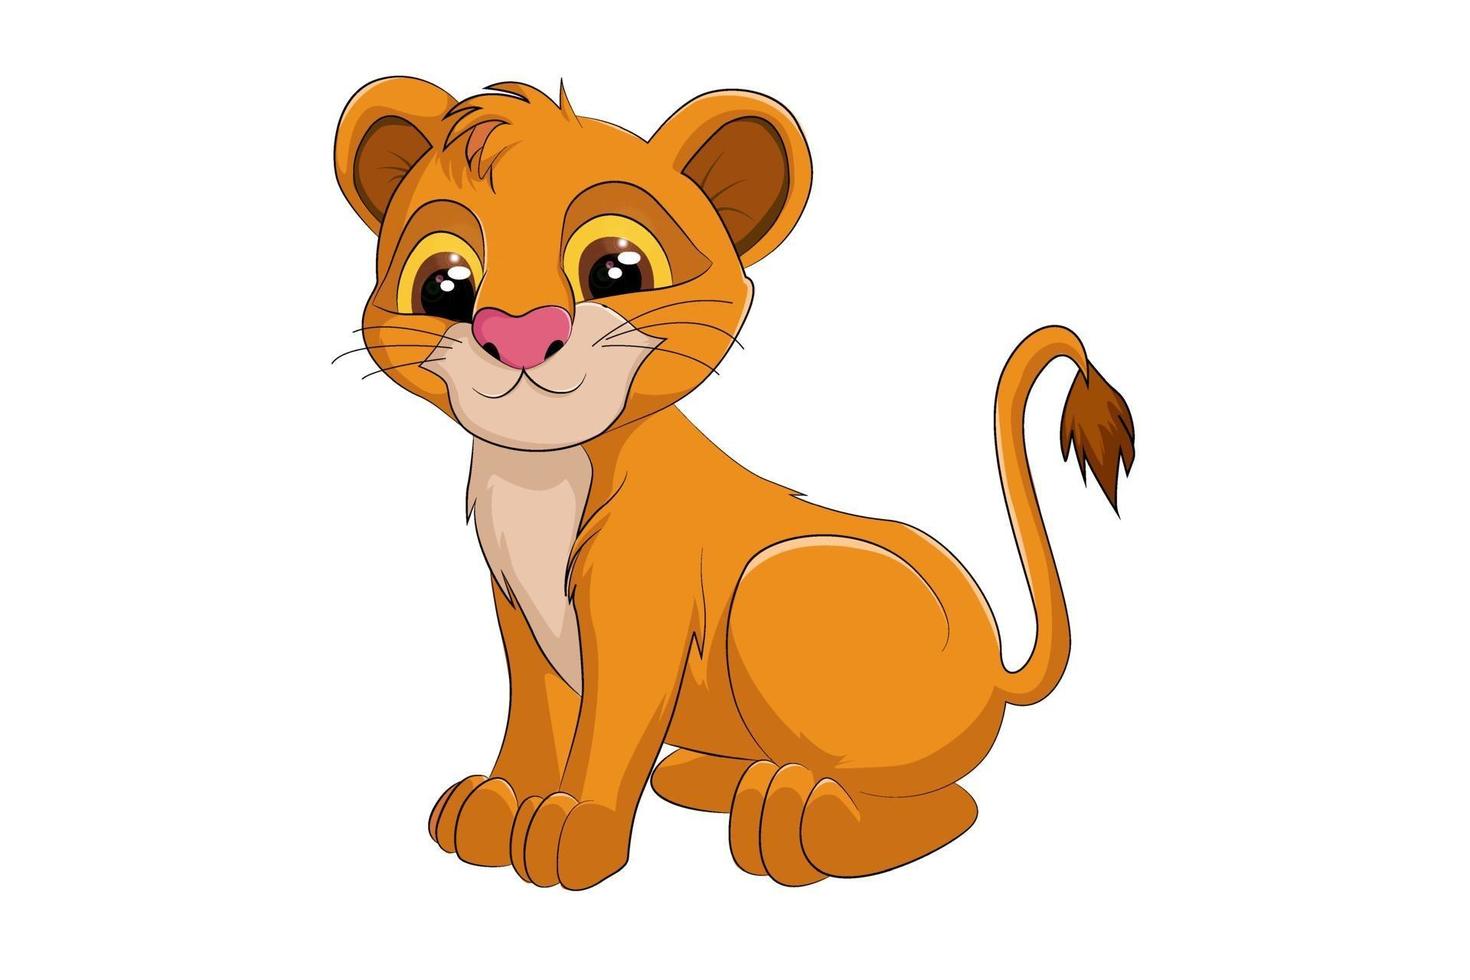 un simpatico cucciolo di leone, disegno animale fumetto illustrazione vettoriale